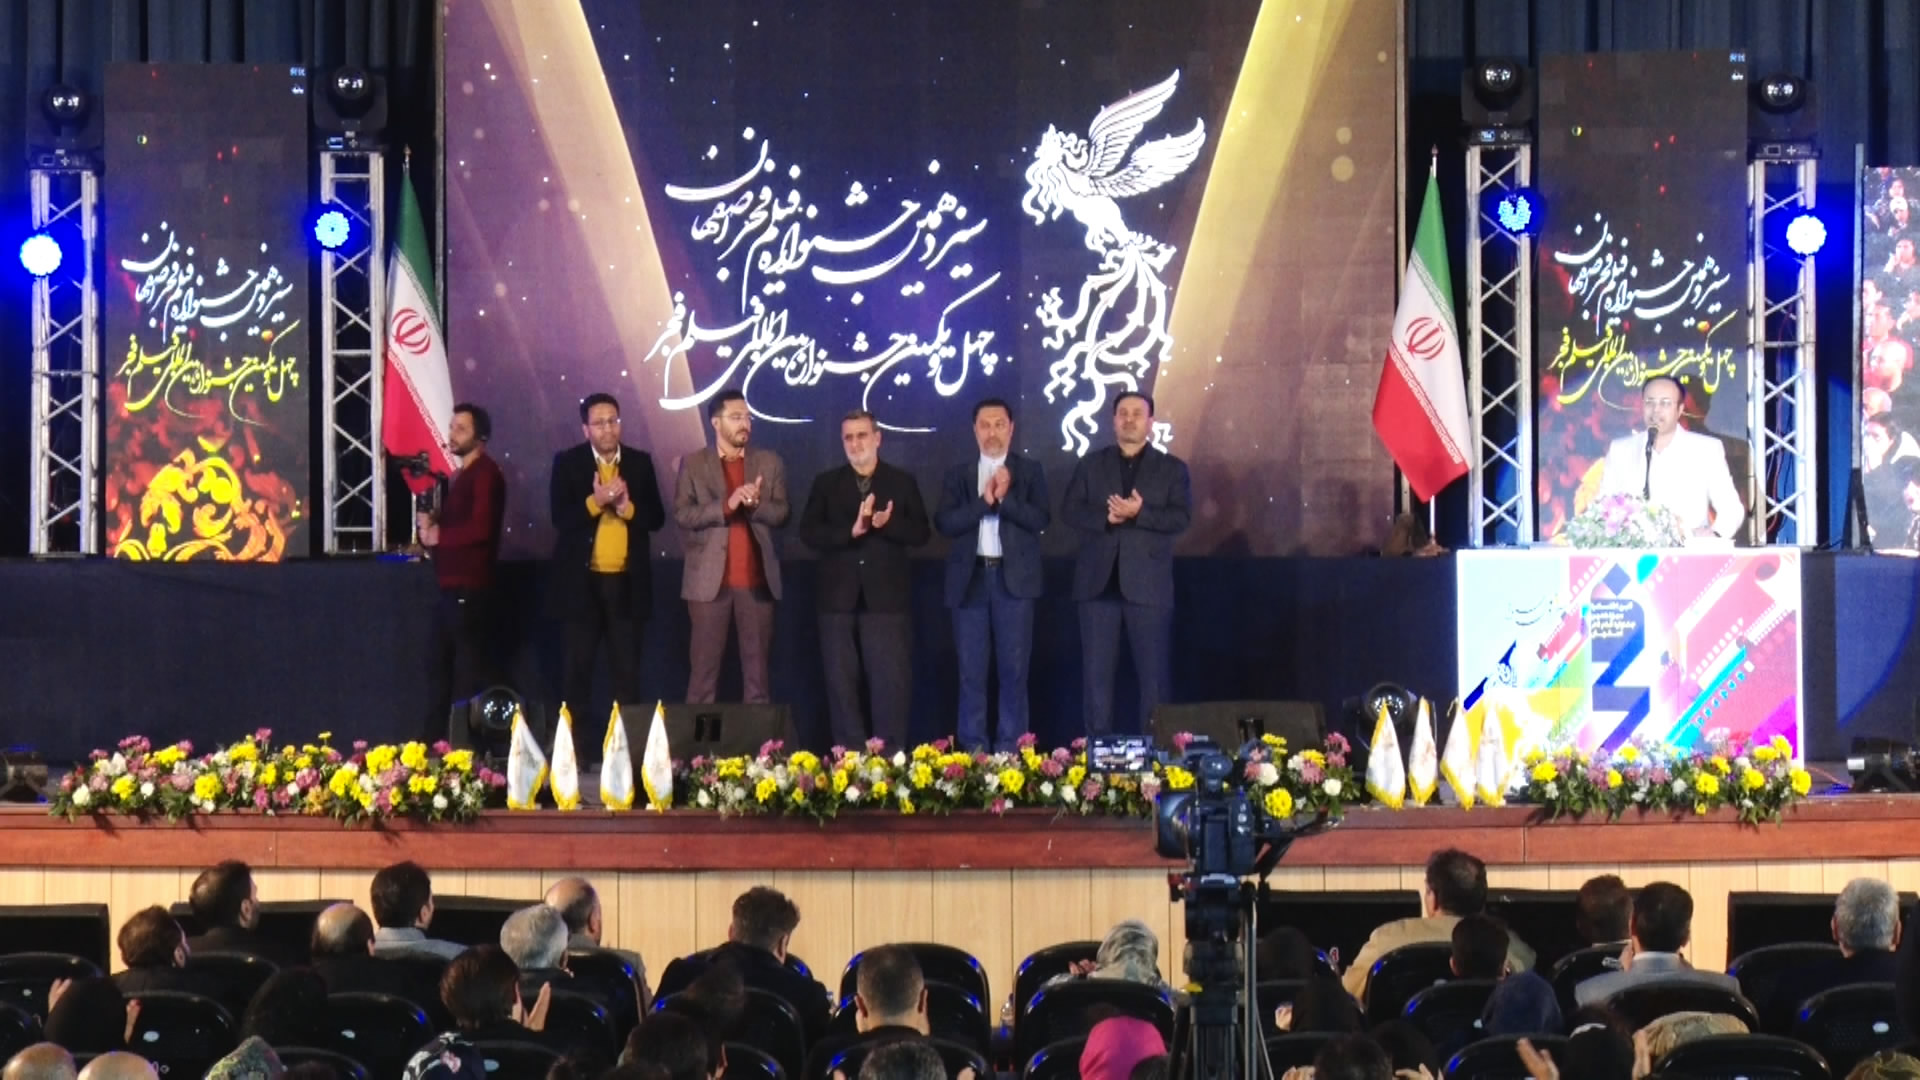 برگزاری آیین اختتامیه جشنواره فیلم فجر امسال در اصفهان